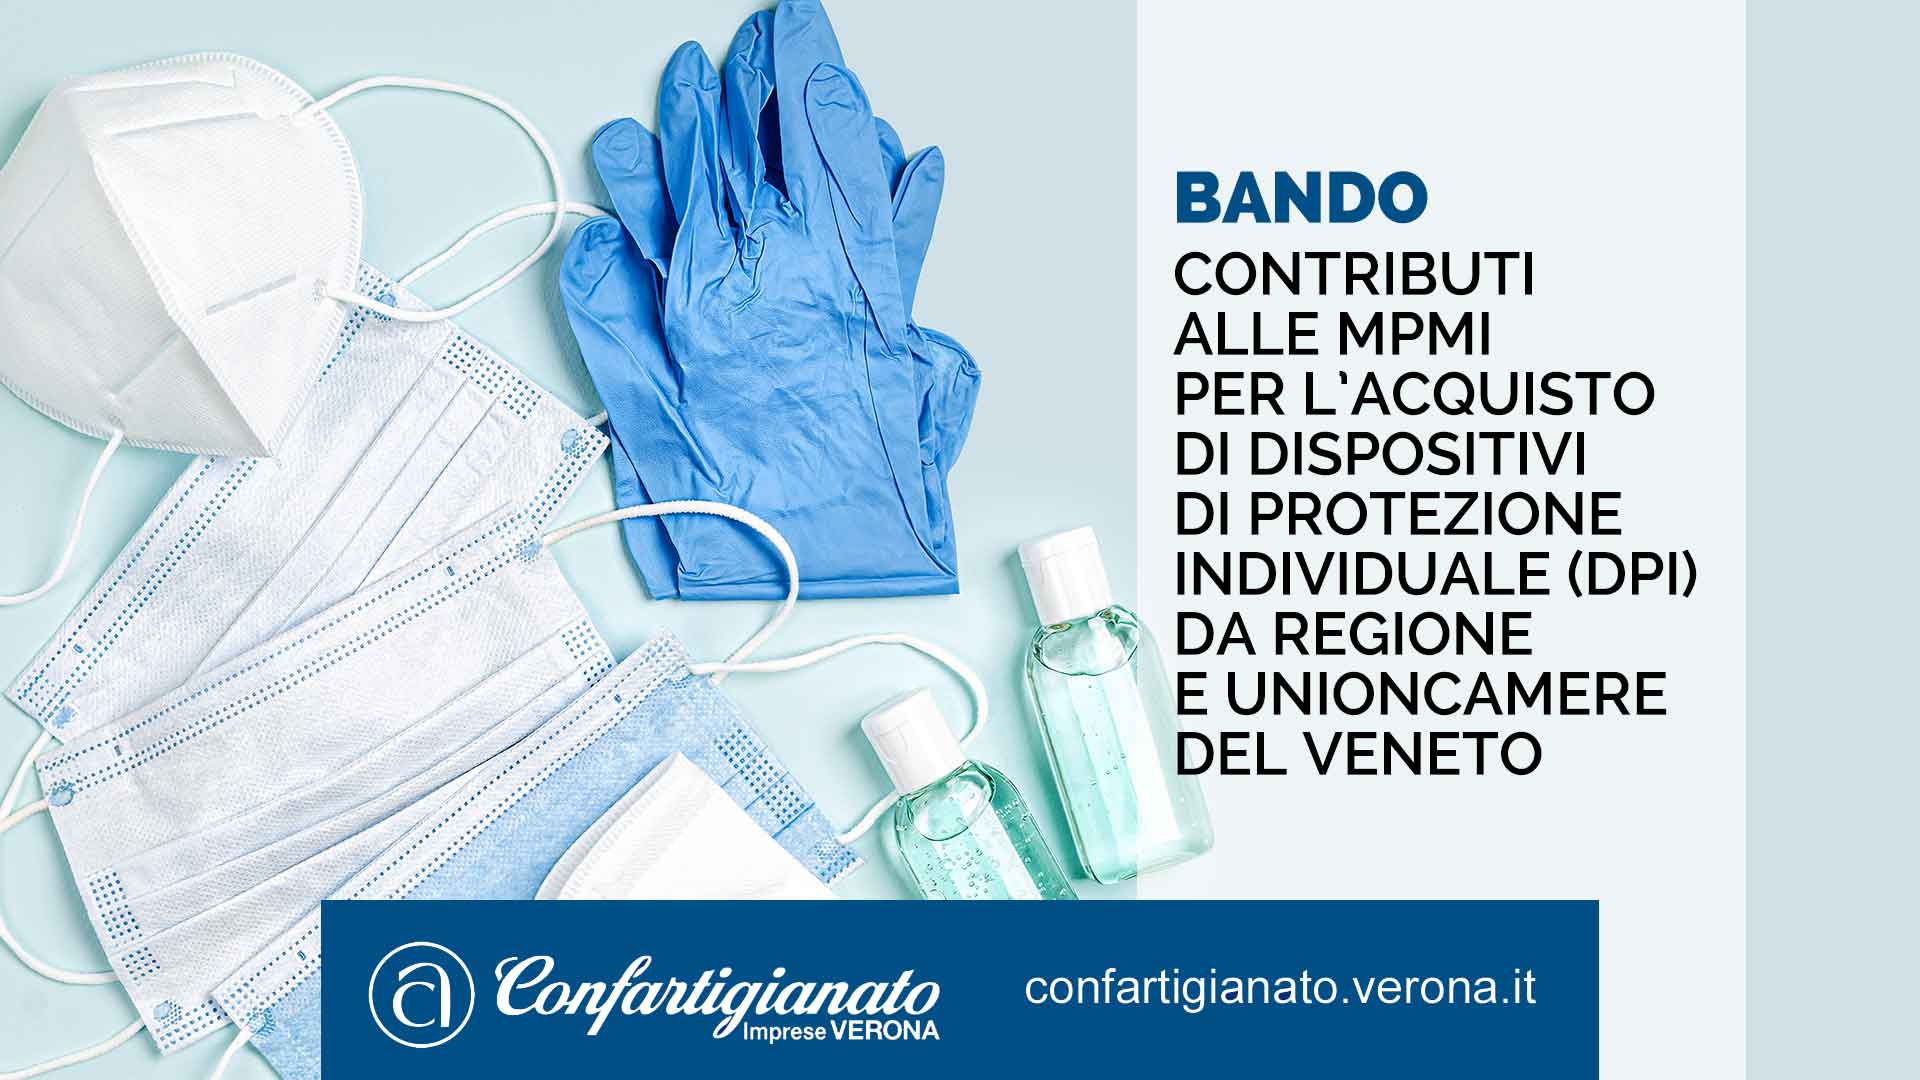 BANDO – Contributi alle MPMI per l’acquisto di Dispositivi di Protezione Individuale (DPI) da Regione e Unioncamere del Veneto